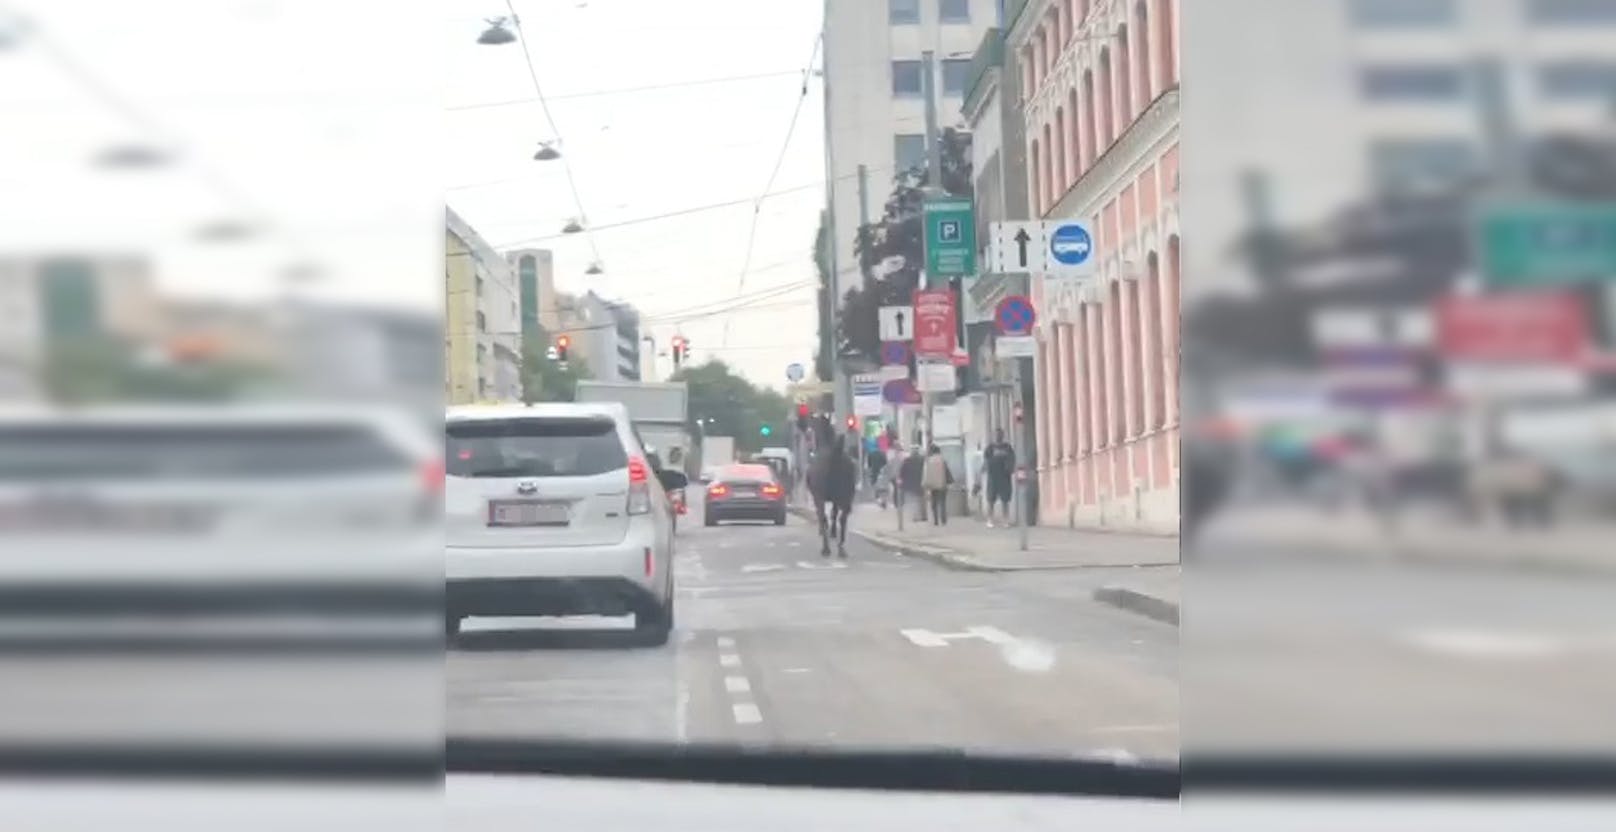 Pferd in Wien ausgebüxt